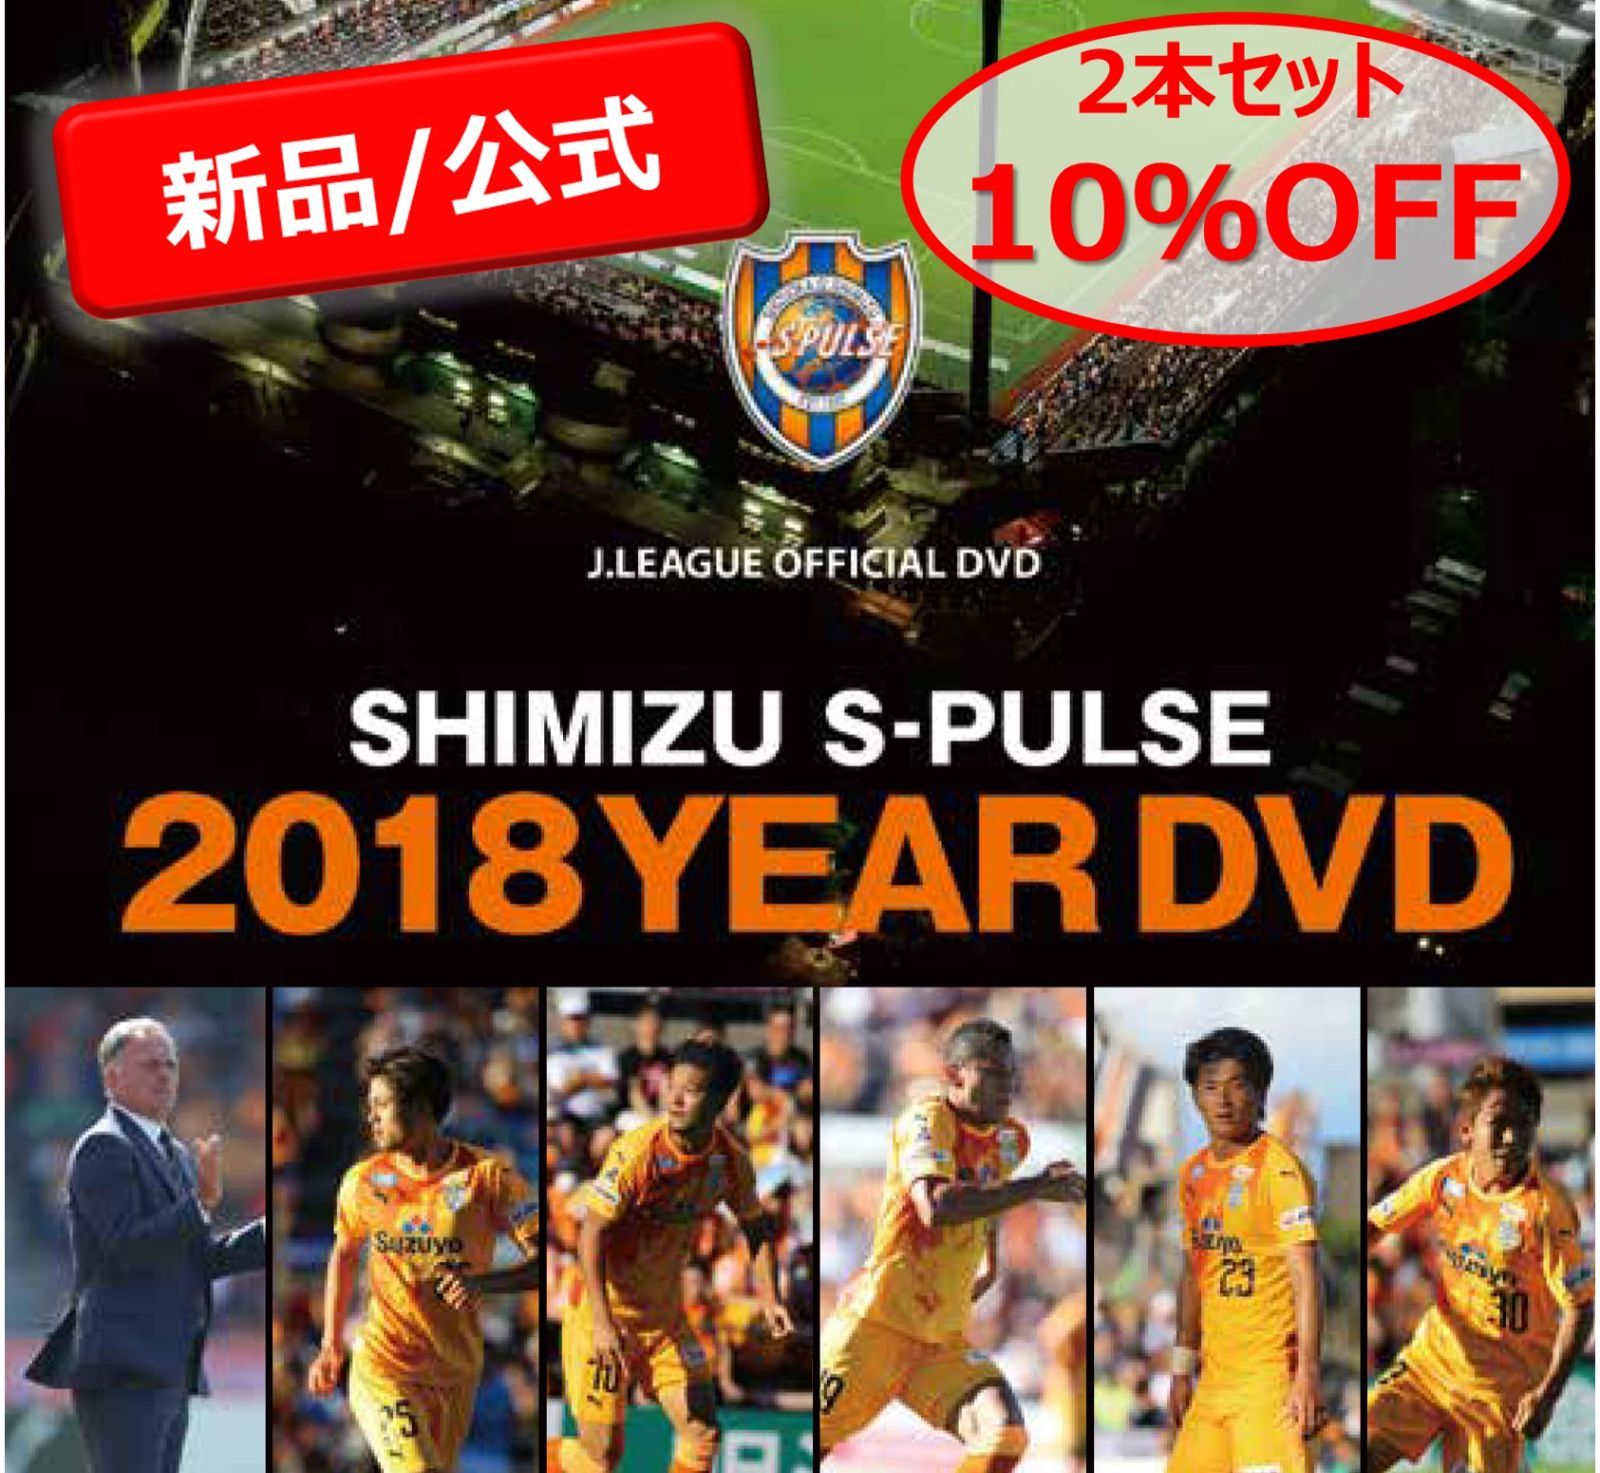 清水エスパルス イヤーDVD 2018-2019 2シーズンセット【DVD】 - メルカリ